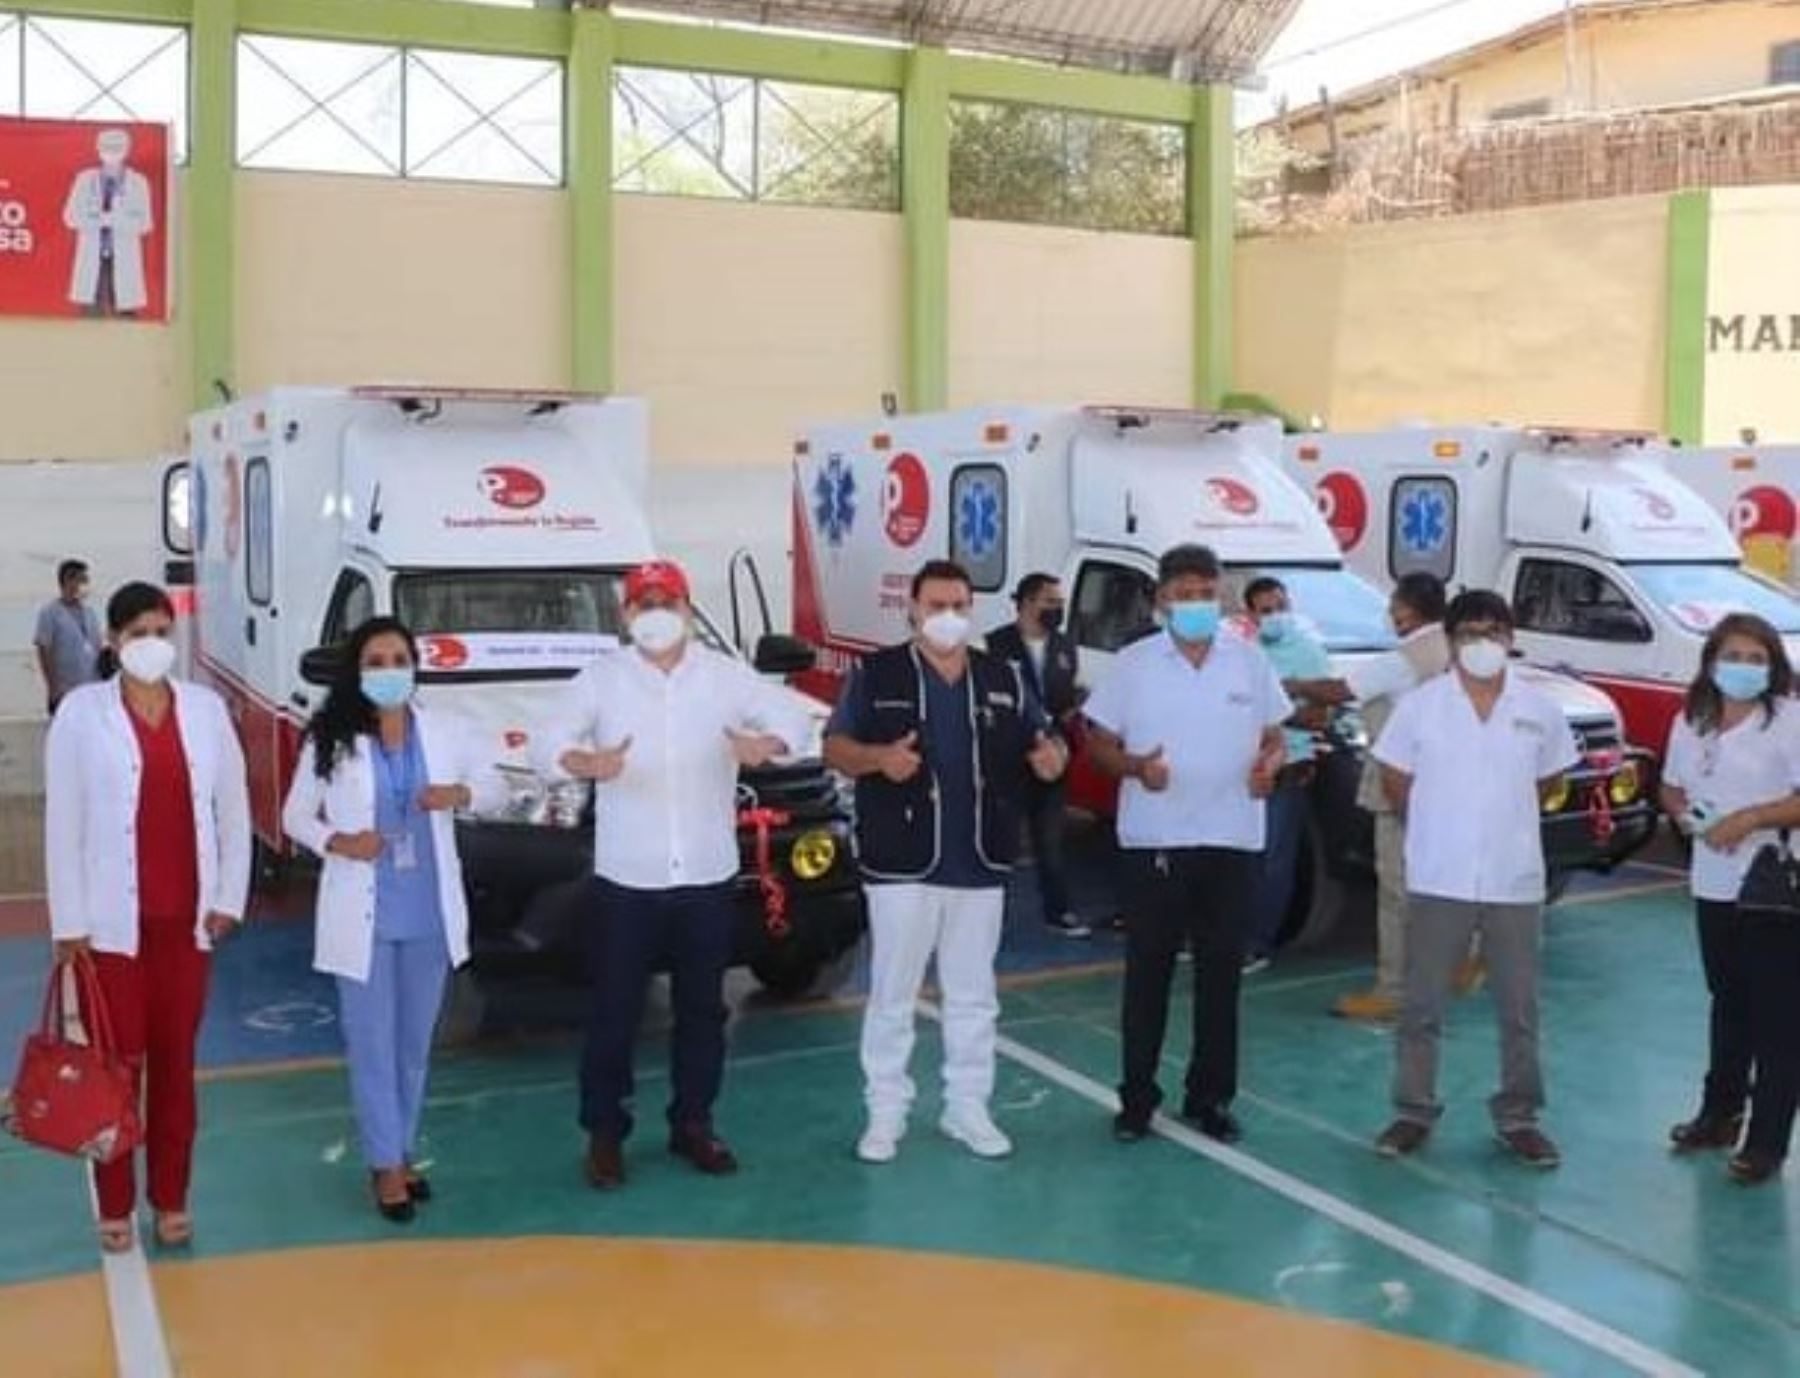 Gobierno Regional de Piura entregó seis ambulancias a diversos establecimientos de salud de Sullana para fortalecer el primer nivel de atención en salud de esa provincia. ANDINA/Difusión